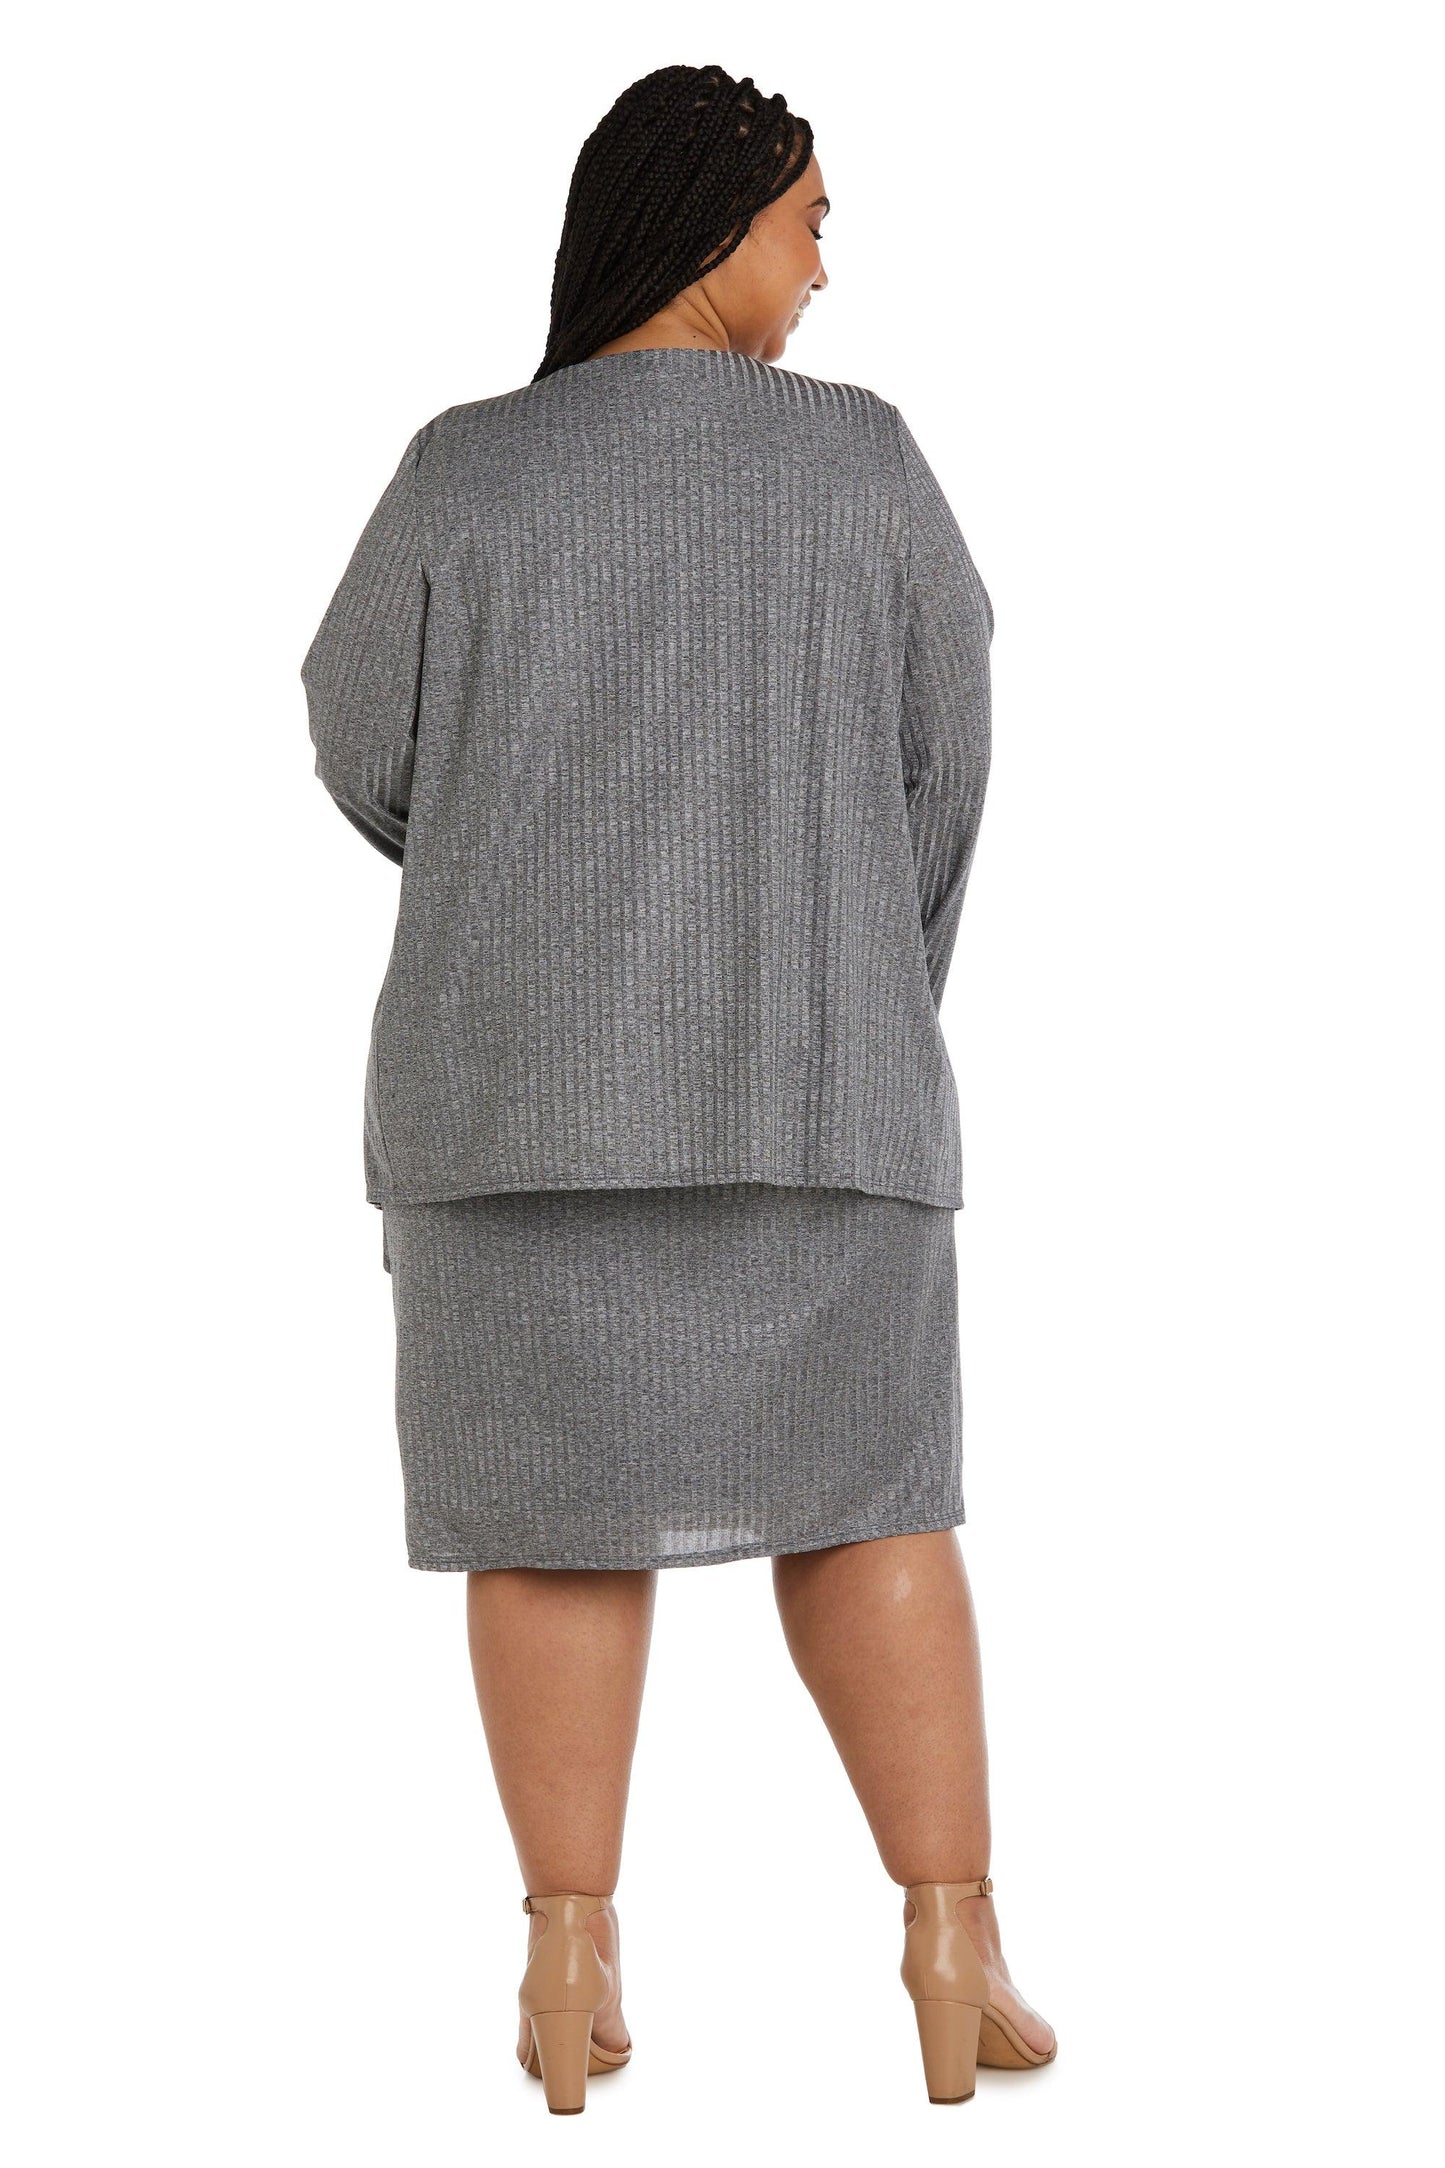 R&M Richards Plus Size Short Jacket Dress 9516W - The Dress Outlet